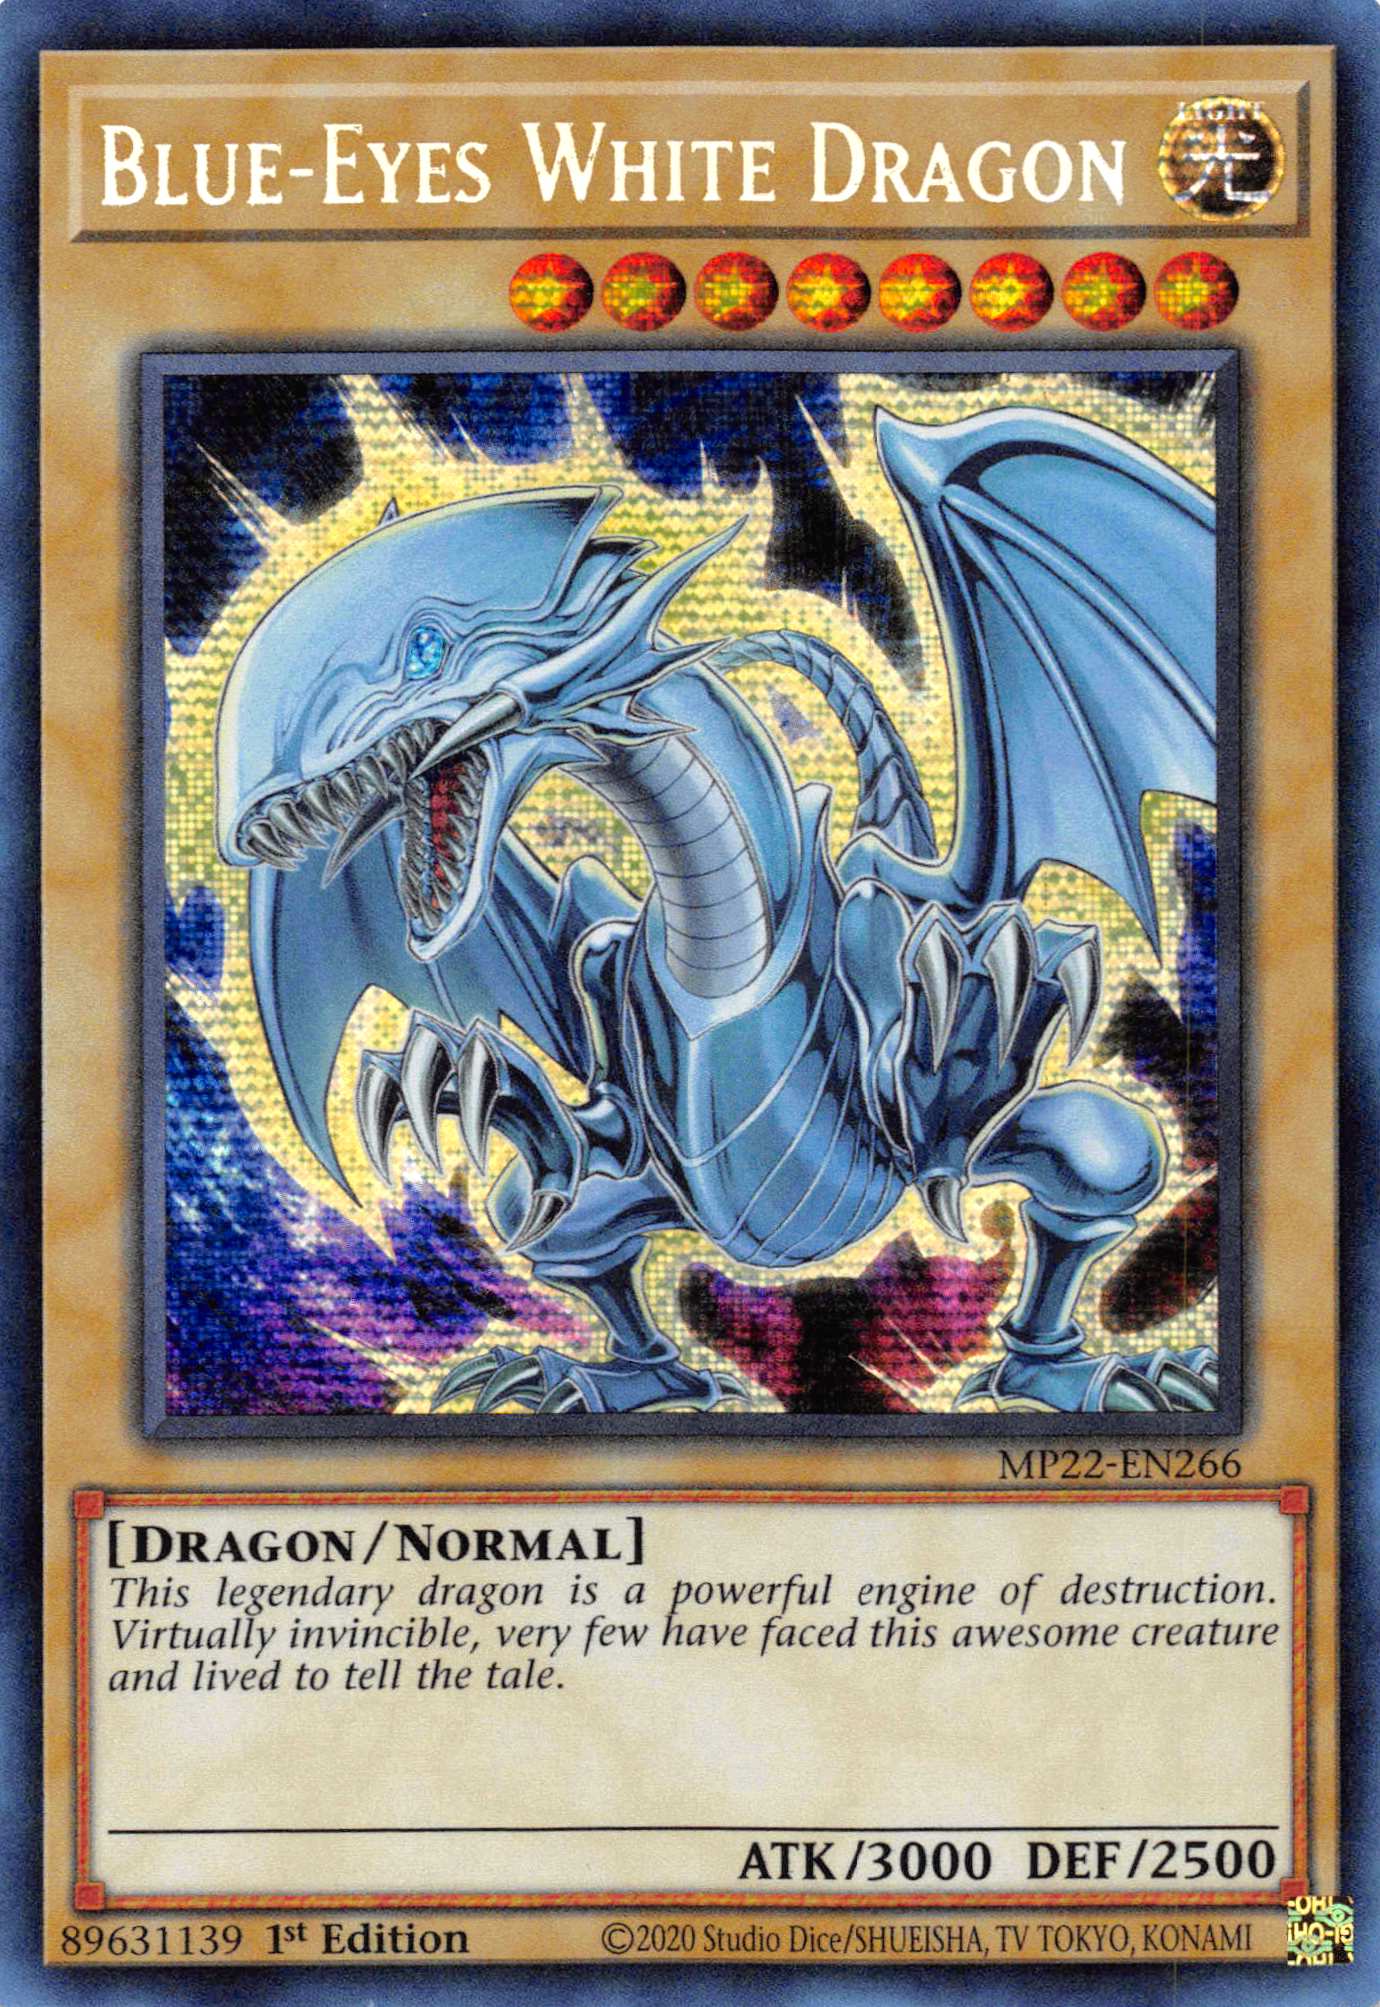 Blue-Eyes White Dragon [MP22-EN266] Prismatic Secret Rare